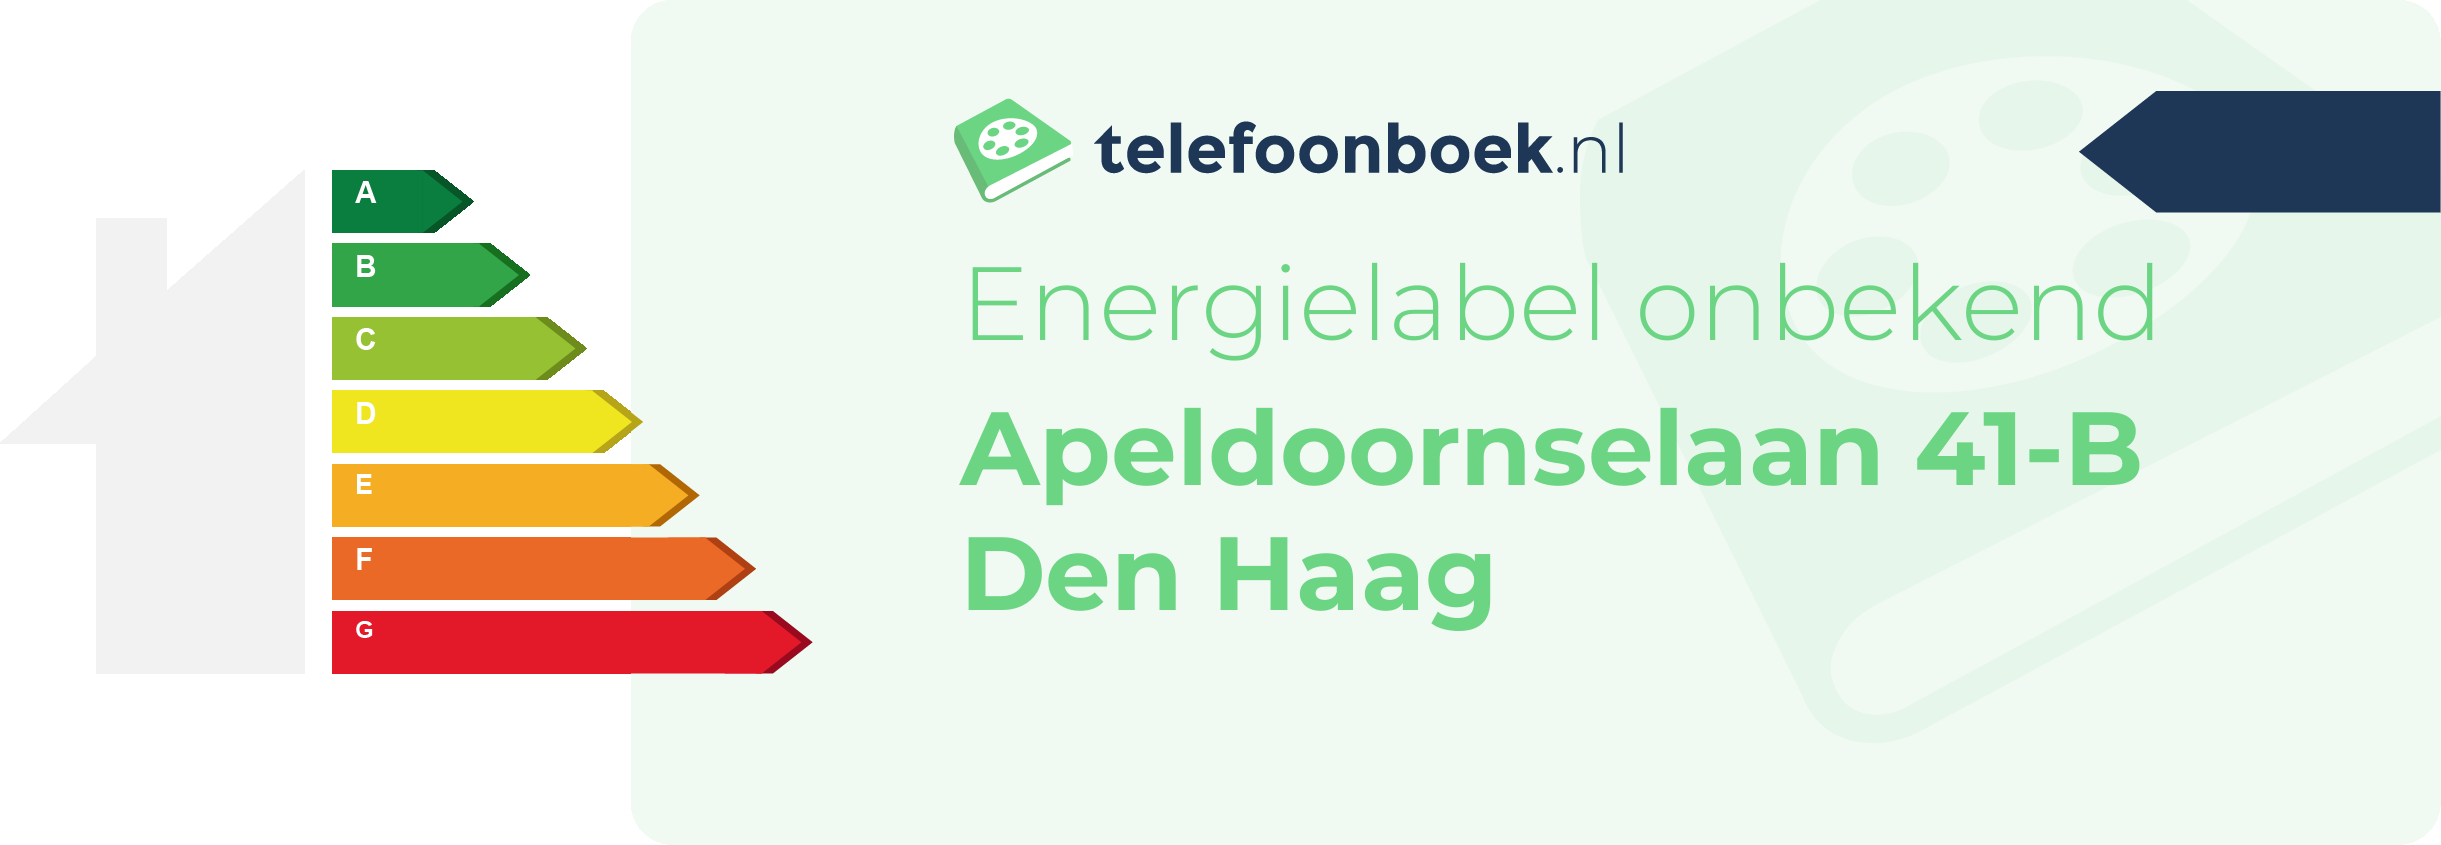 Energielabel Apeldoornselaan 41-B Den Haag